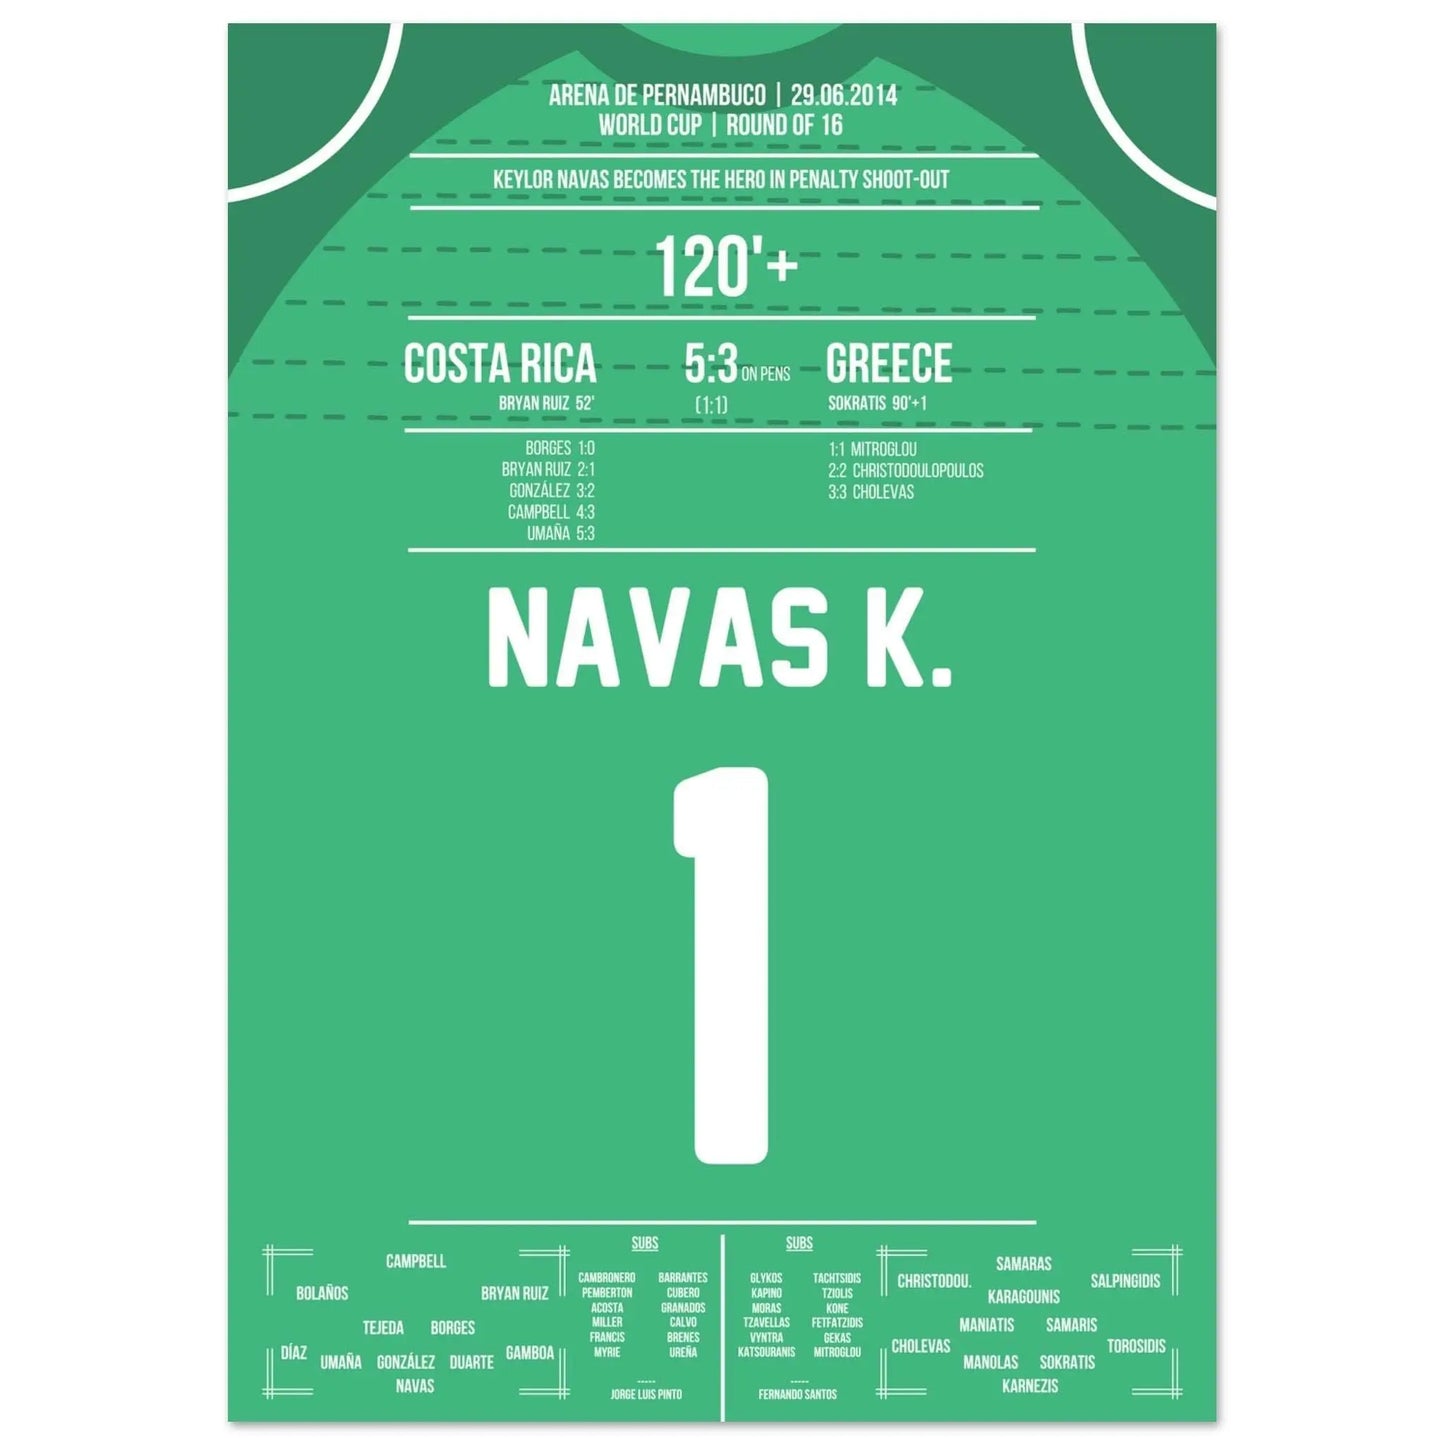 Keylor Navas wird zum Held im Elfmeterschießen | Costa Rica - Griechenland WM 2014